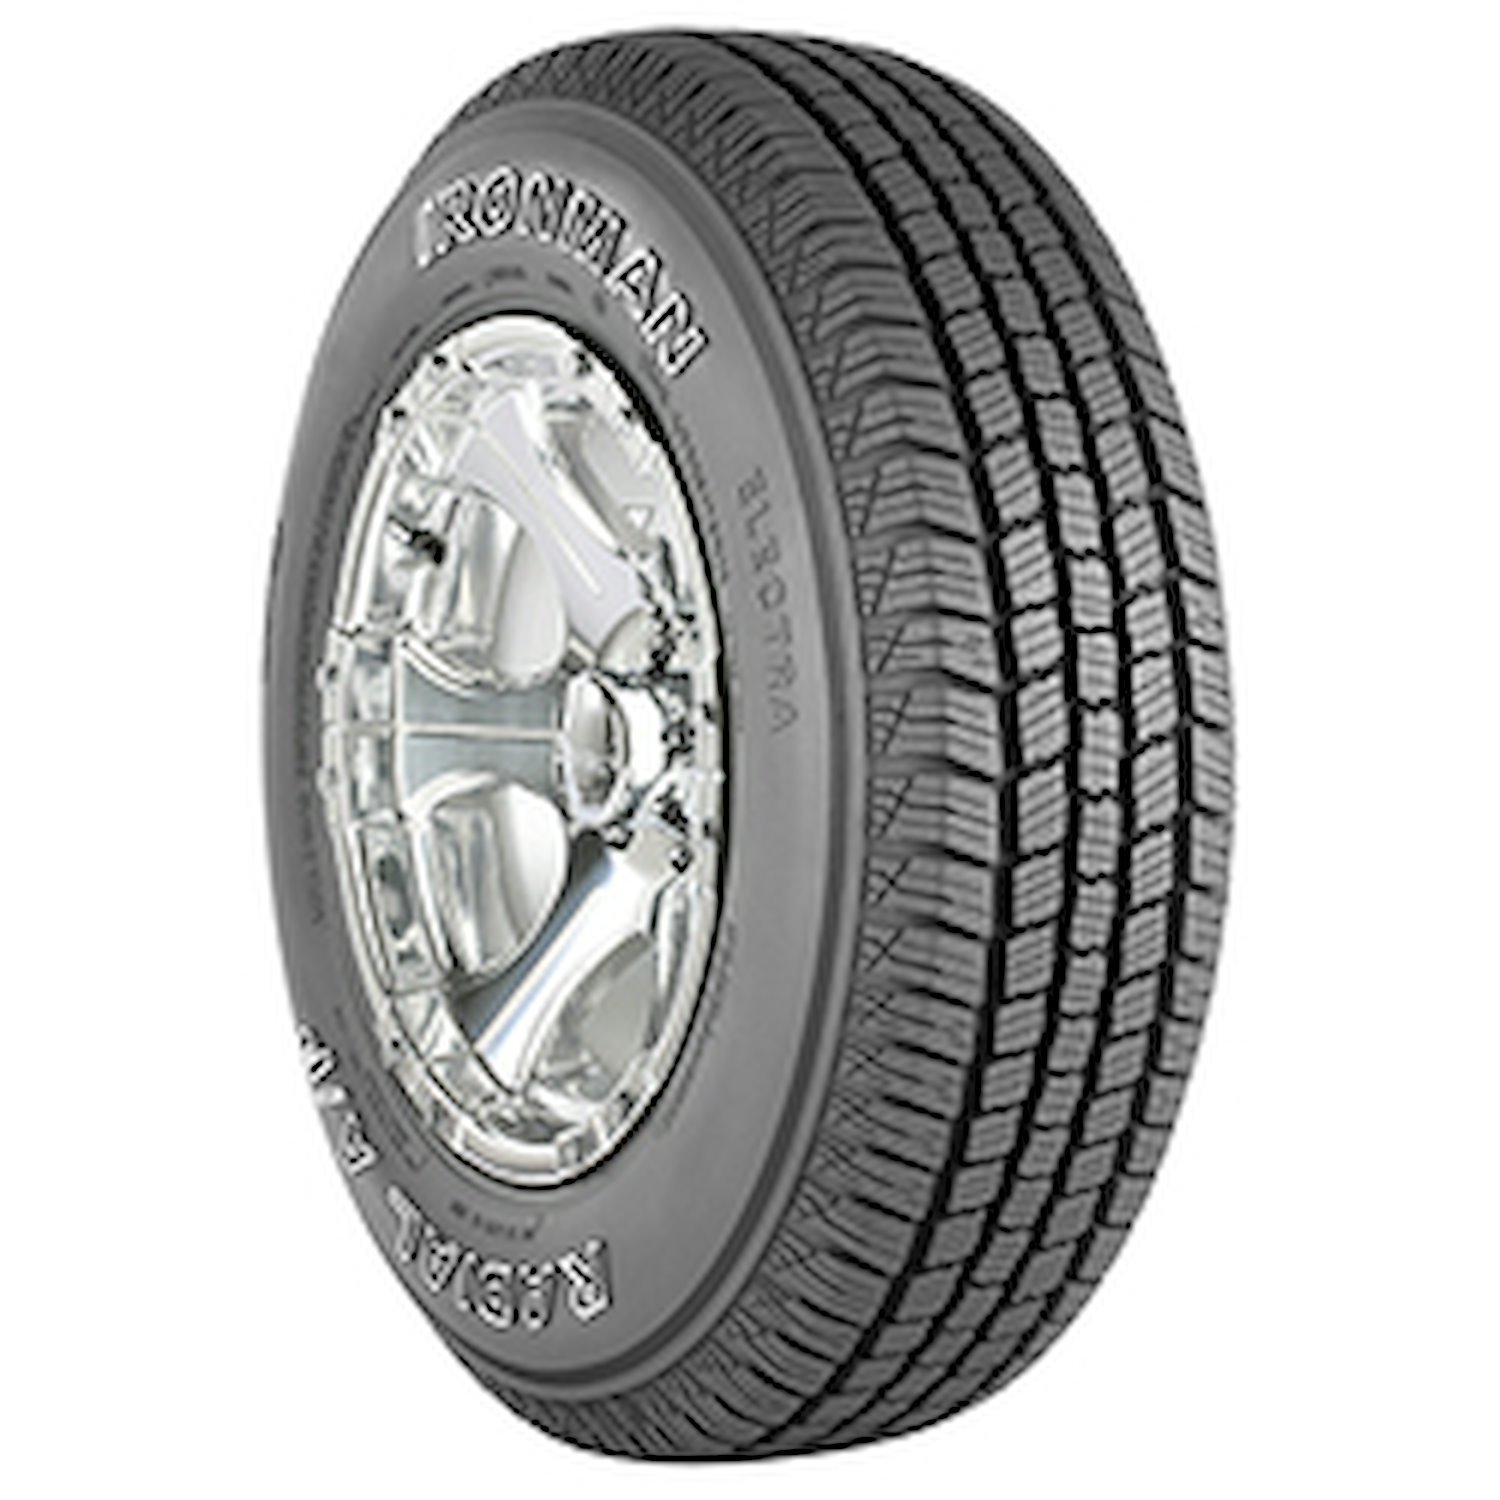 Radial A/P Tire, LT235/85R16/10 120/116Q